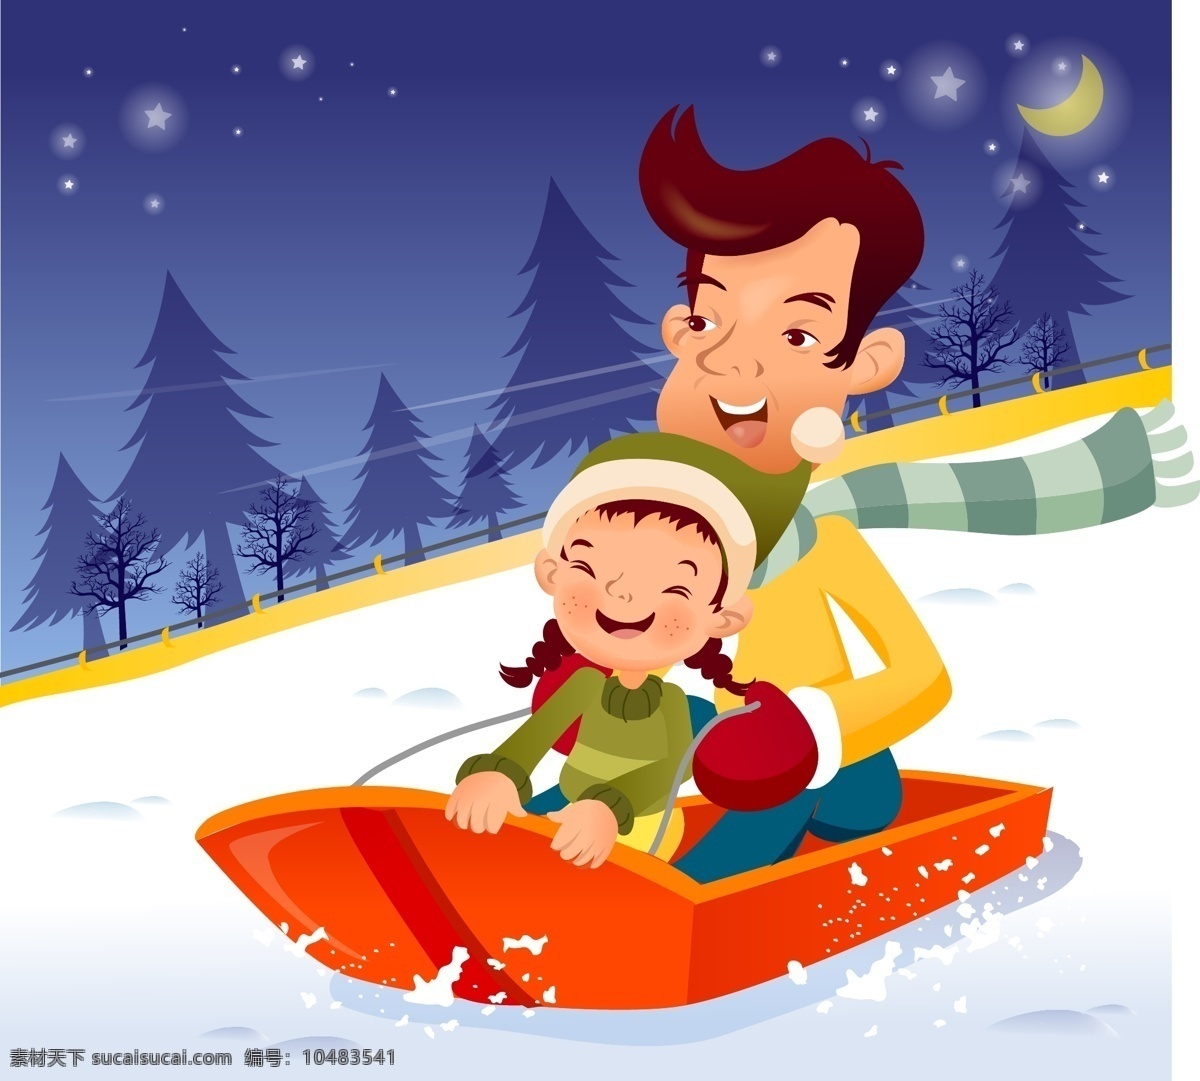 iclickart 卡通 家庭 插画 矢量 滑雪 可爱 性格 矢量图 矢量人物